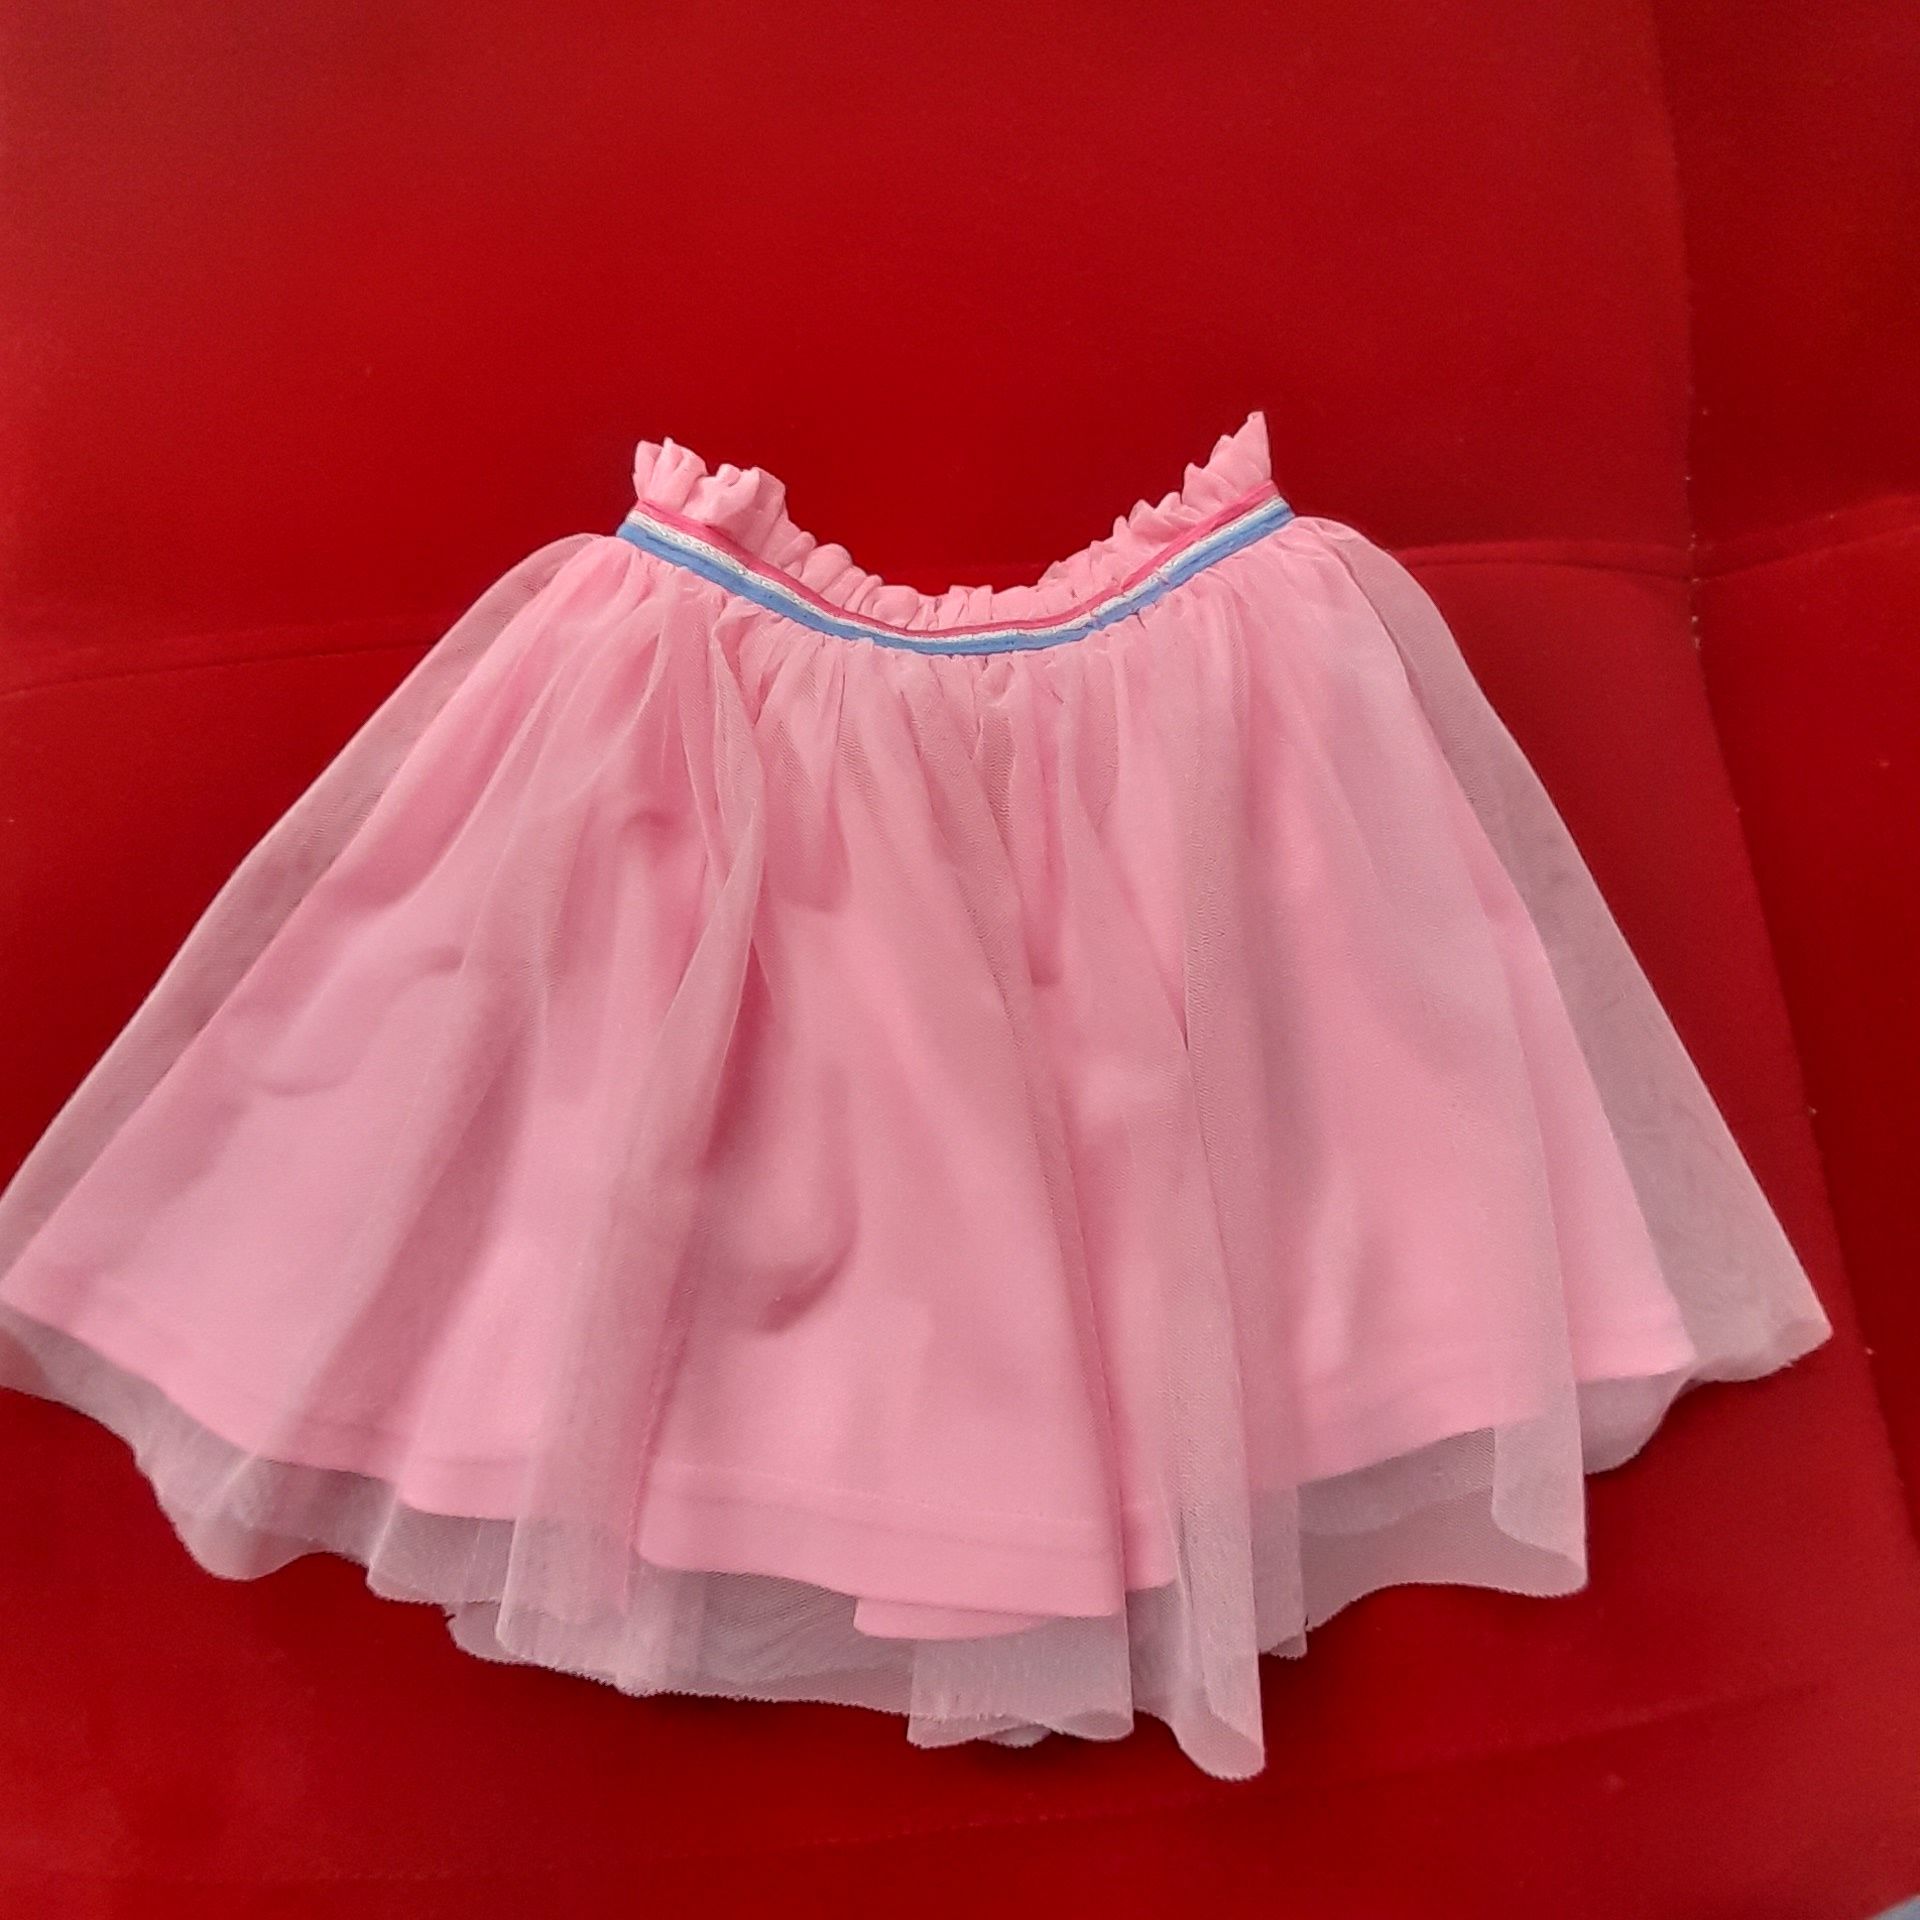 Spódnica dla dziewczynki, różowa,  rozmiar 110.